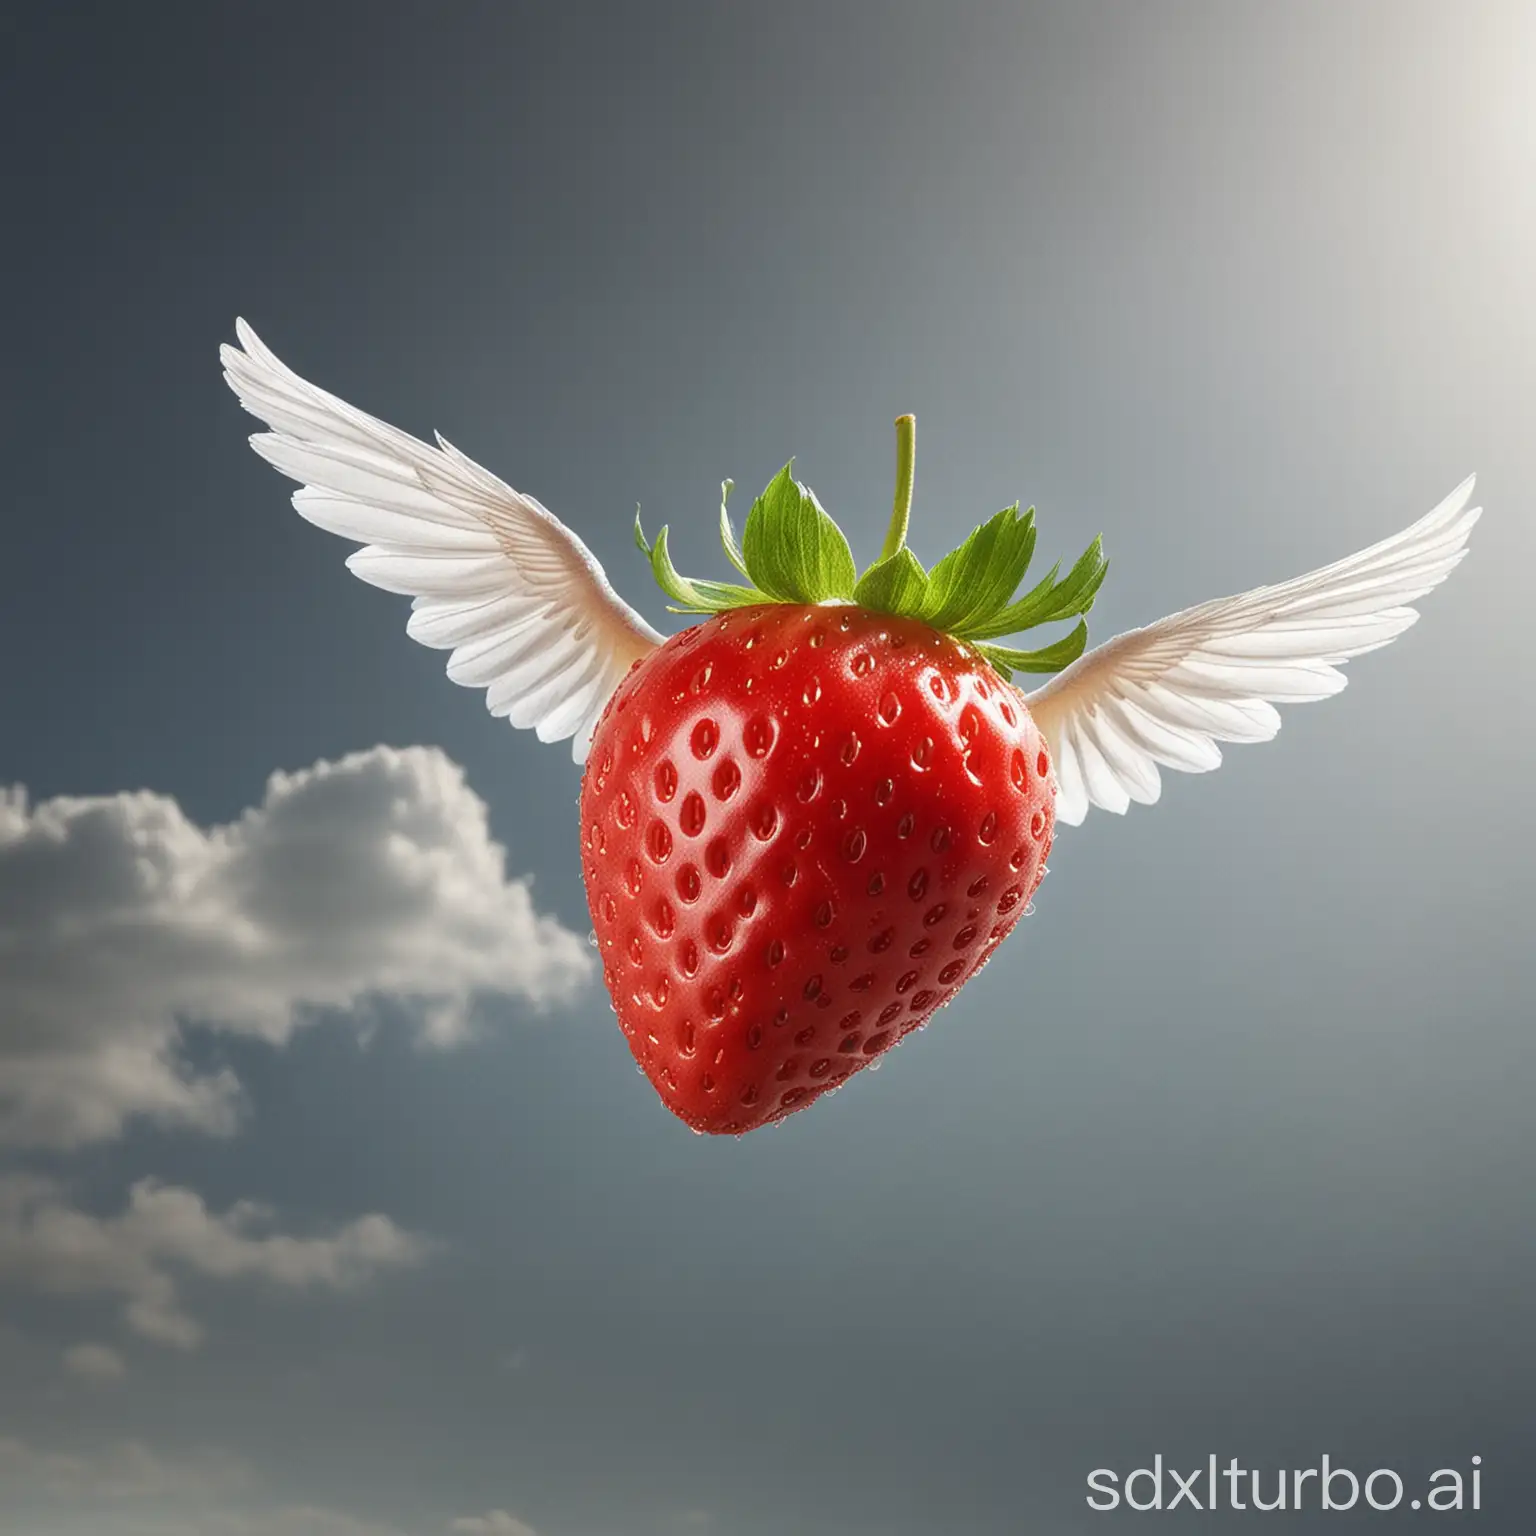 Fliegende Erdbeere setzt zum Landeanflug an